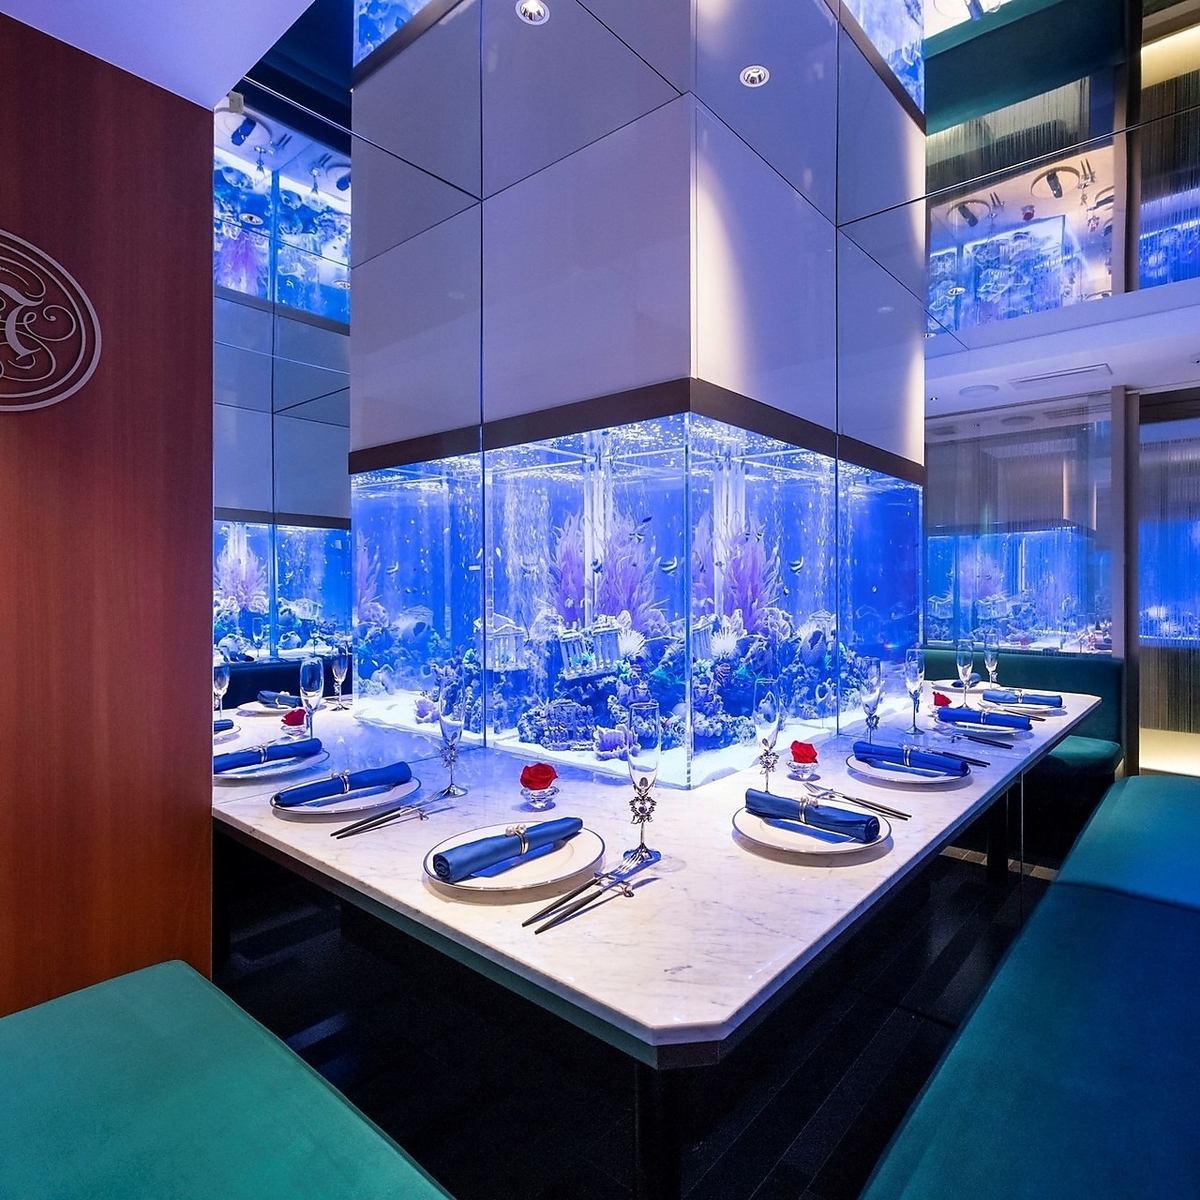 由著名设计师松本哲也设计的杰作水族馆餐厅